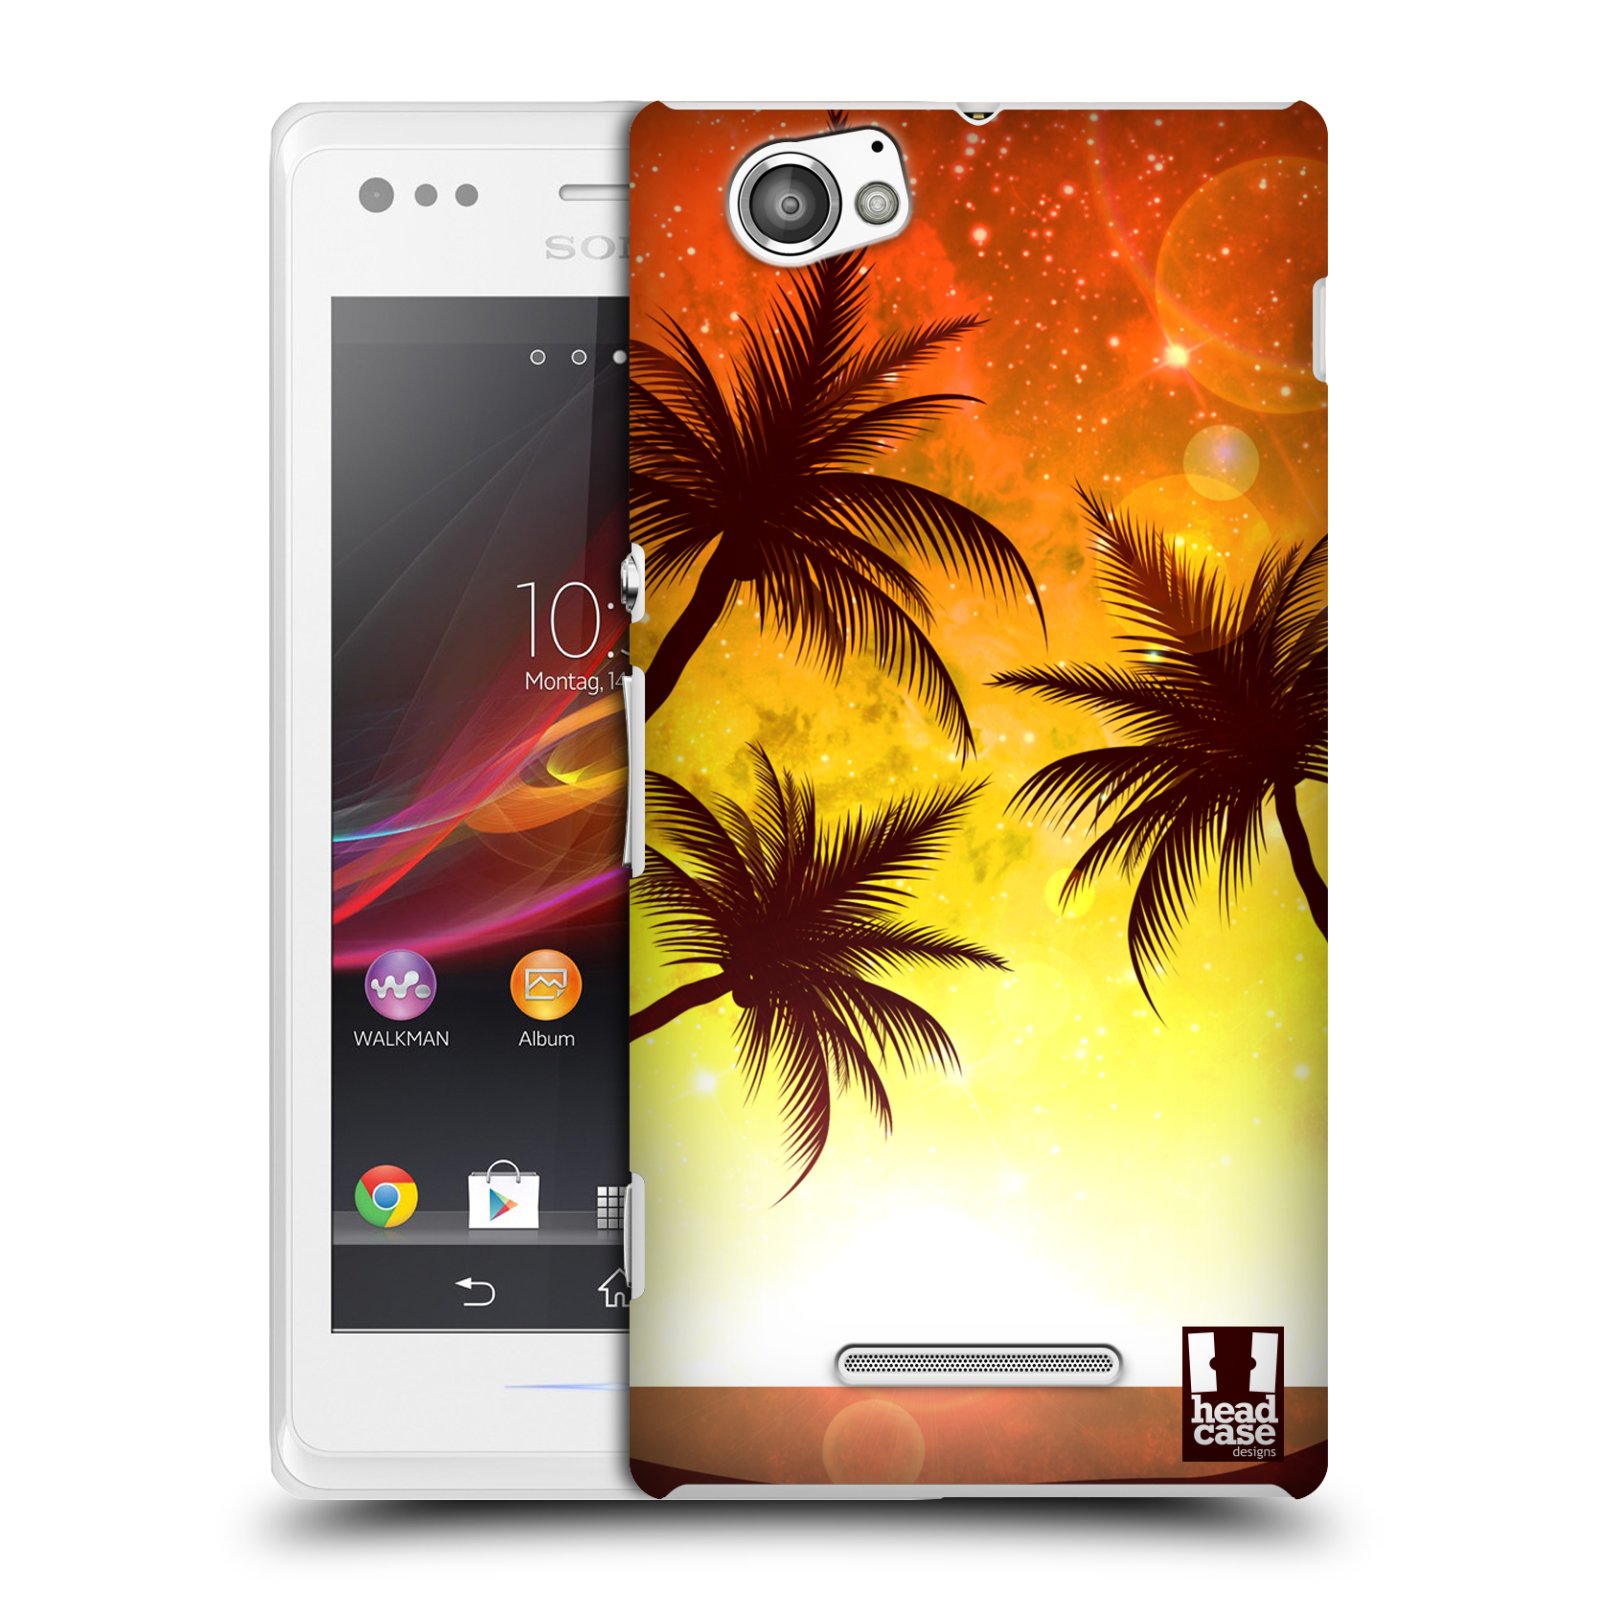 HEAD CASE plastový obal na mobil Sony Xperia M vzor Kreslený motiv silueta moře a palmy ORANŽOVÁ